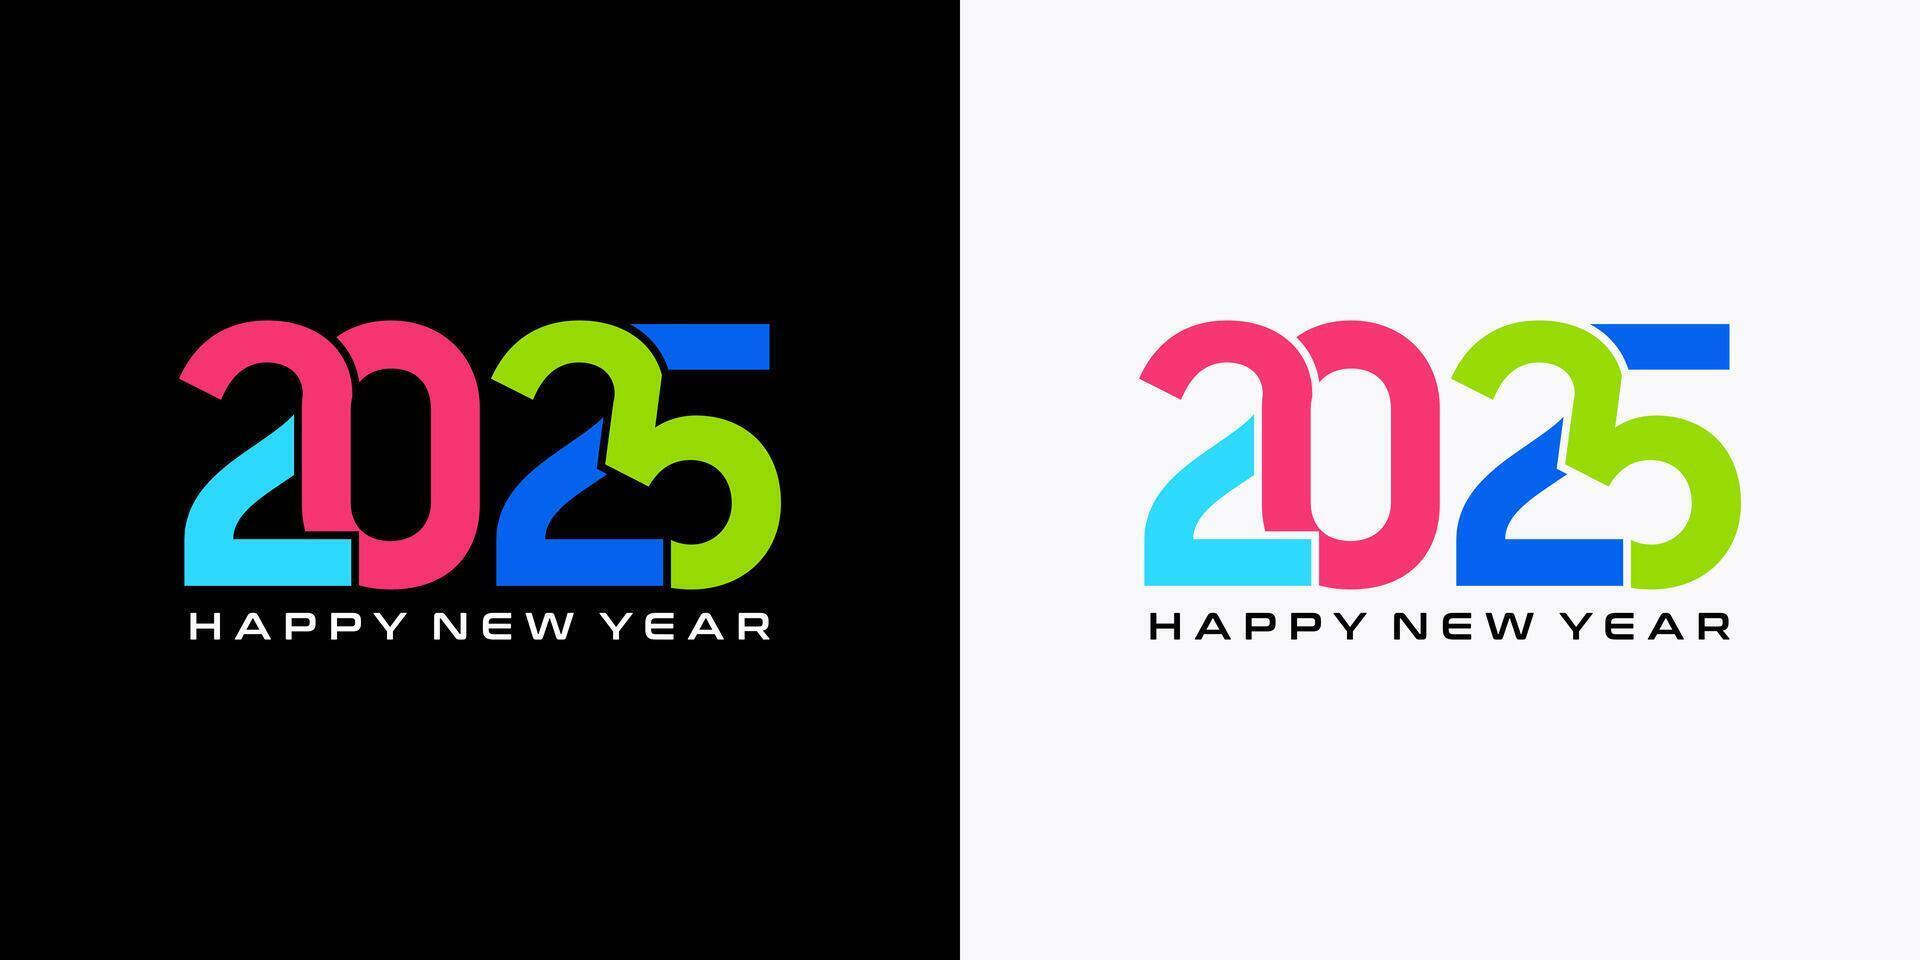 2025 nieuw jaar ontwerp met kleurrijk met elkaar verbonden getallen concept sjabloon vector